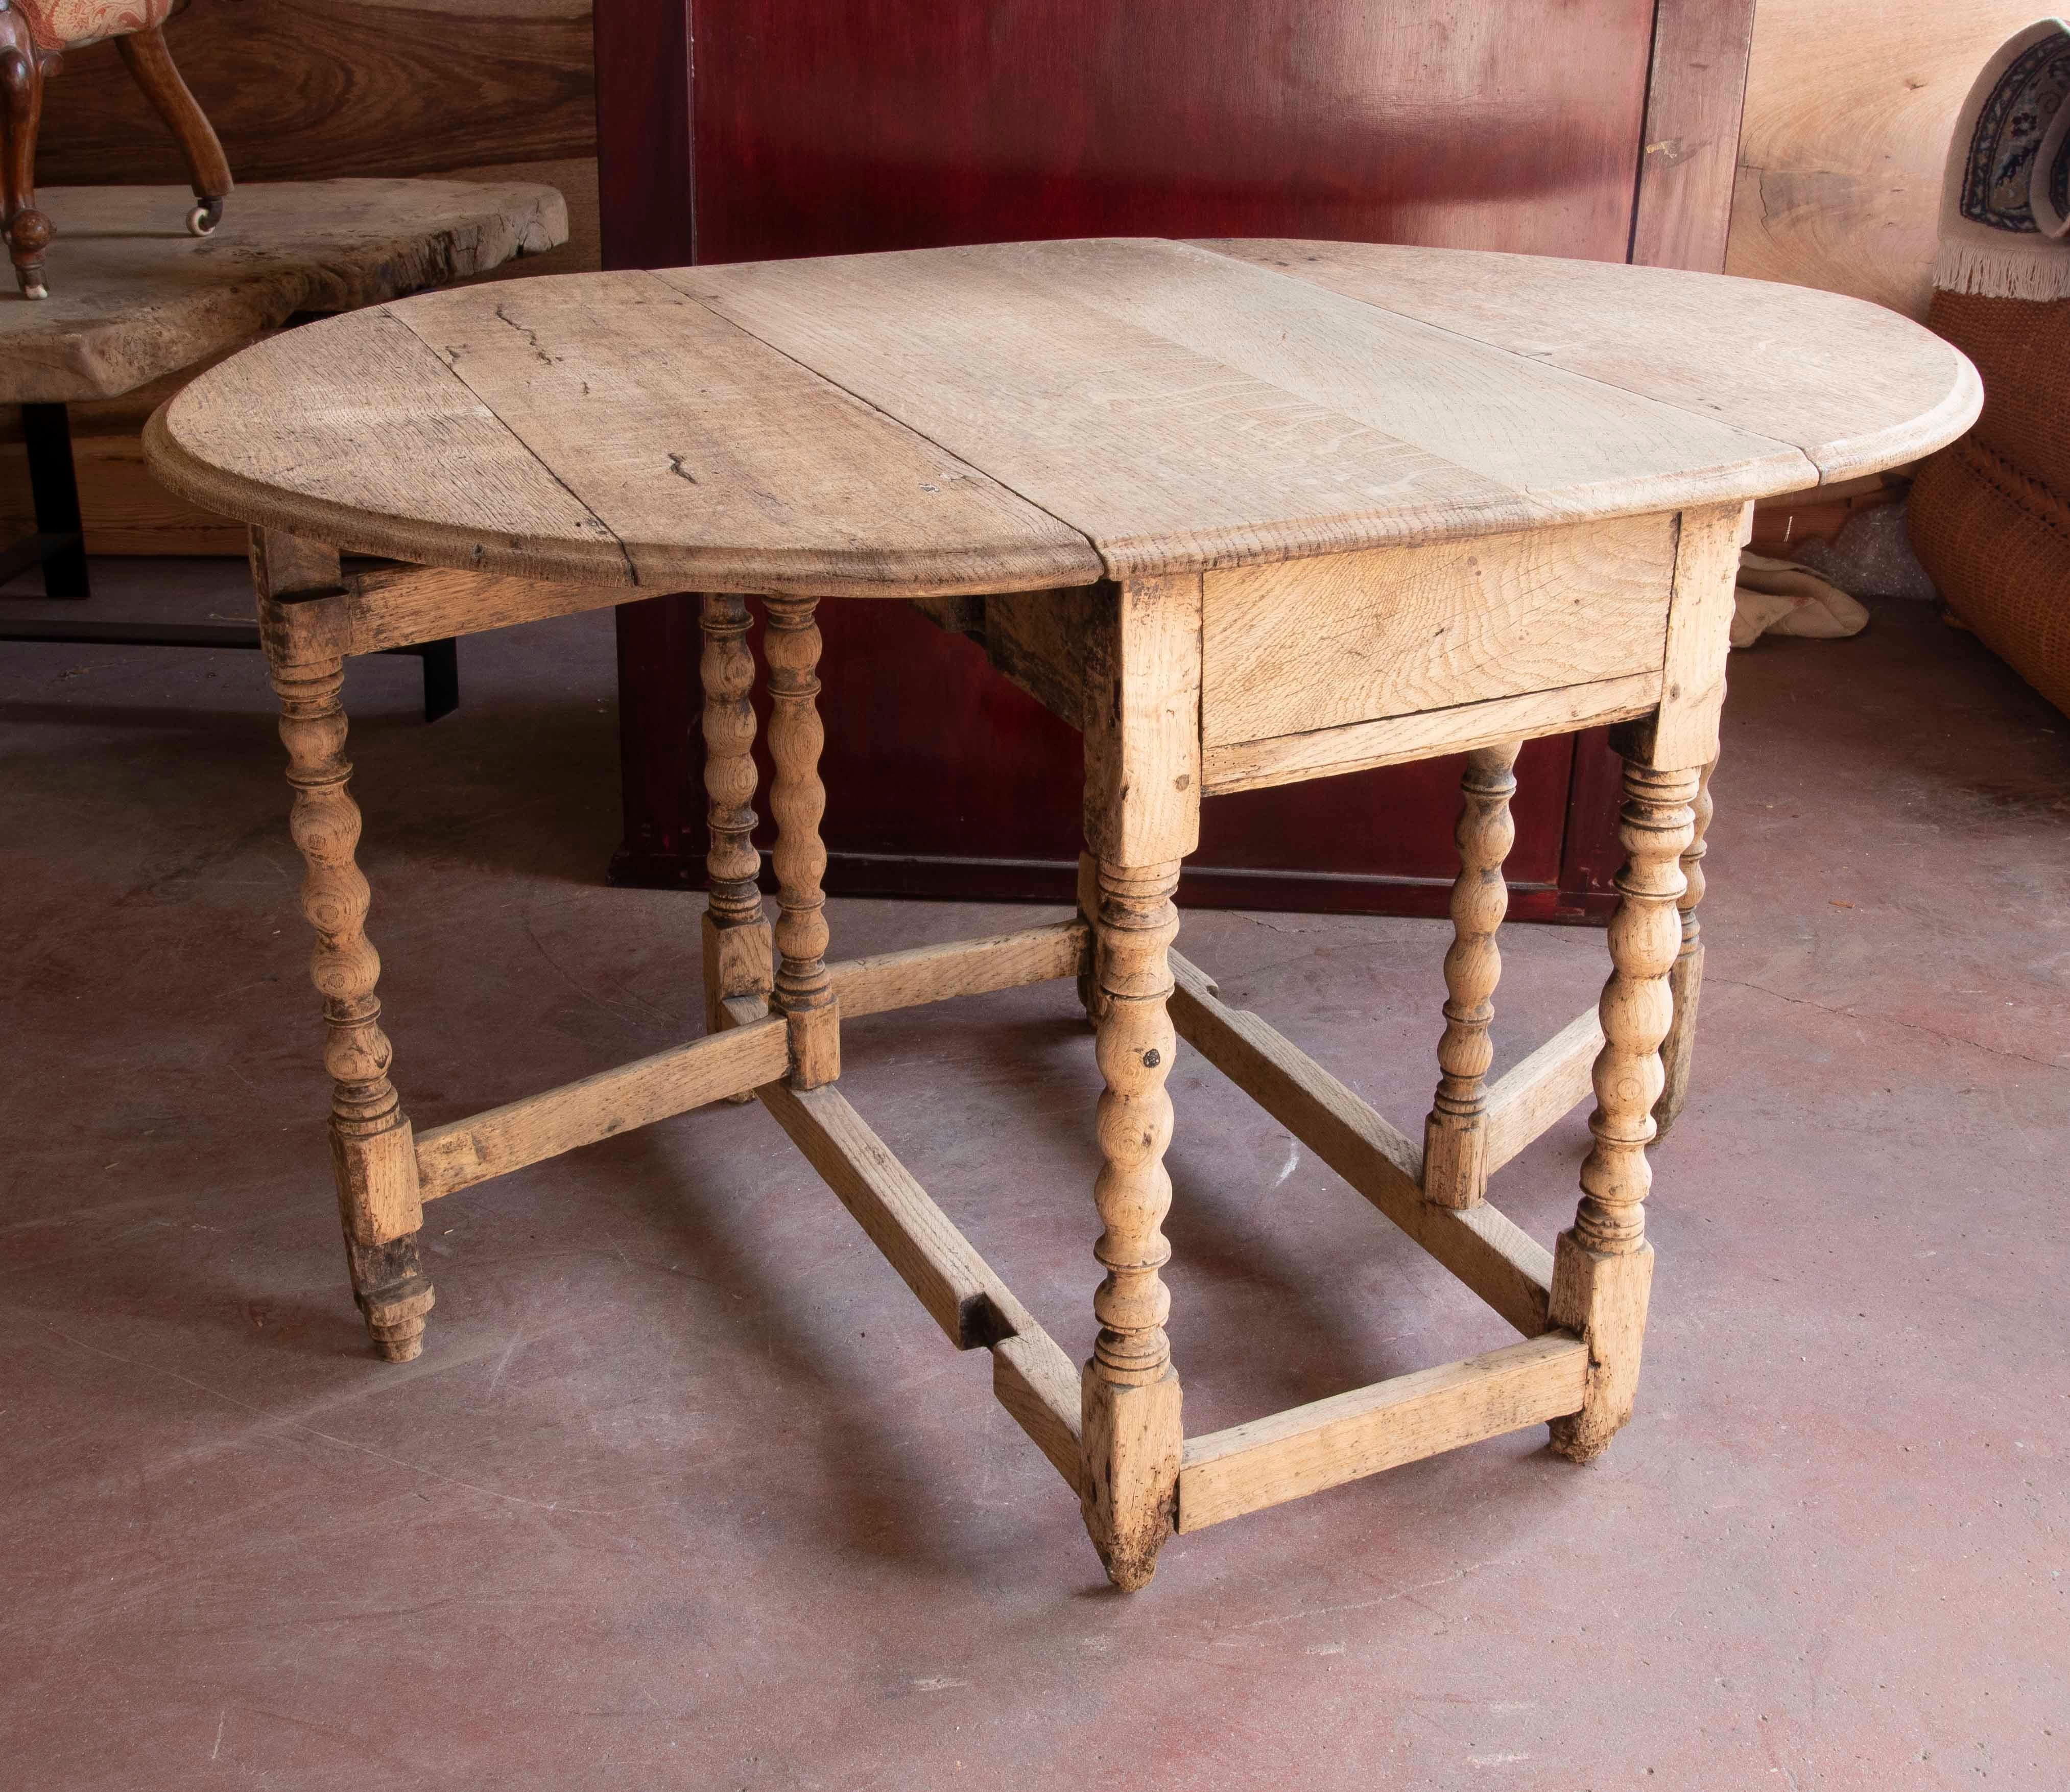 Spanischer Flügeltisch aus Holz mit gedrechselten Beinen 
Abmessungen des offenen Tisches 122cm